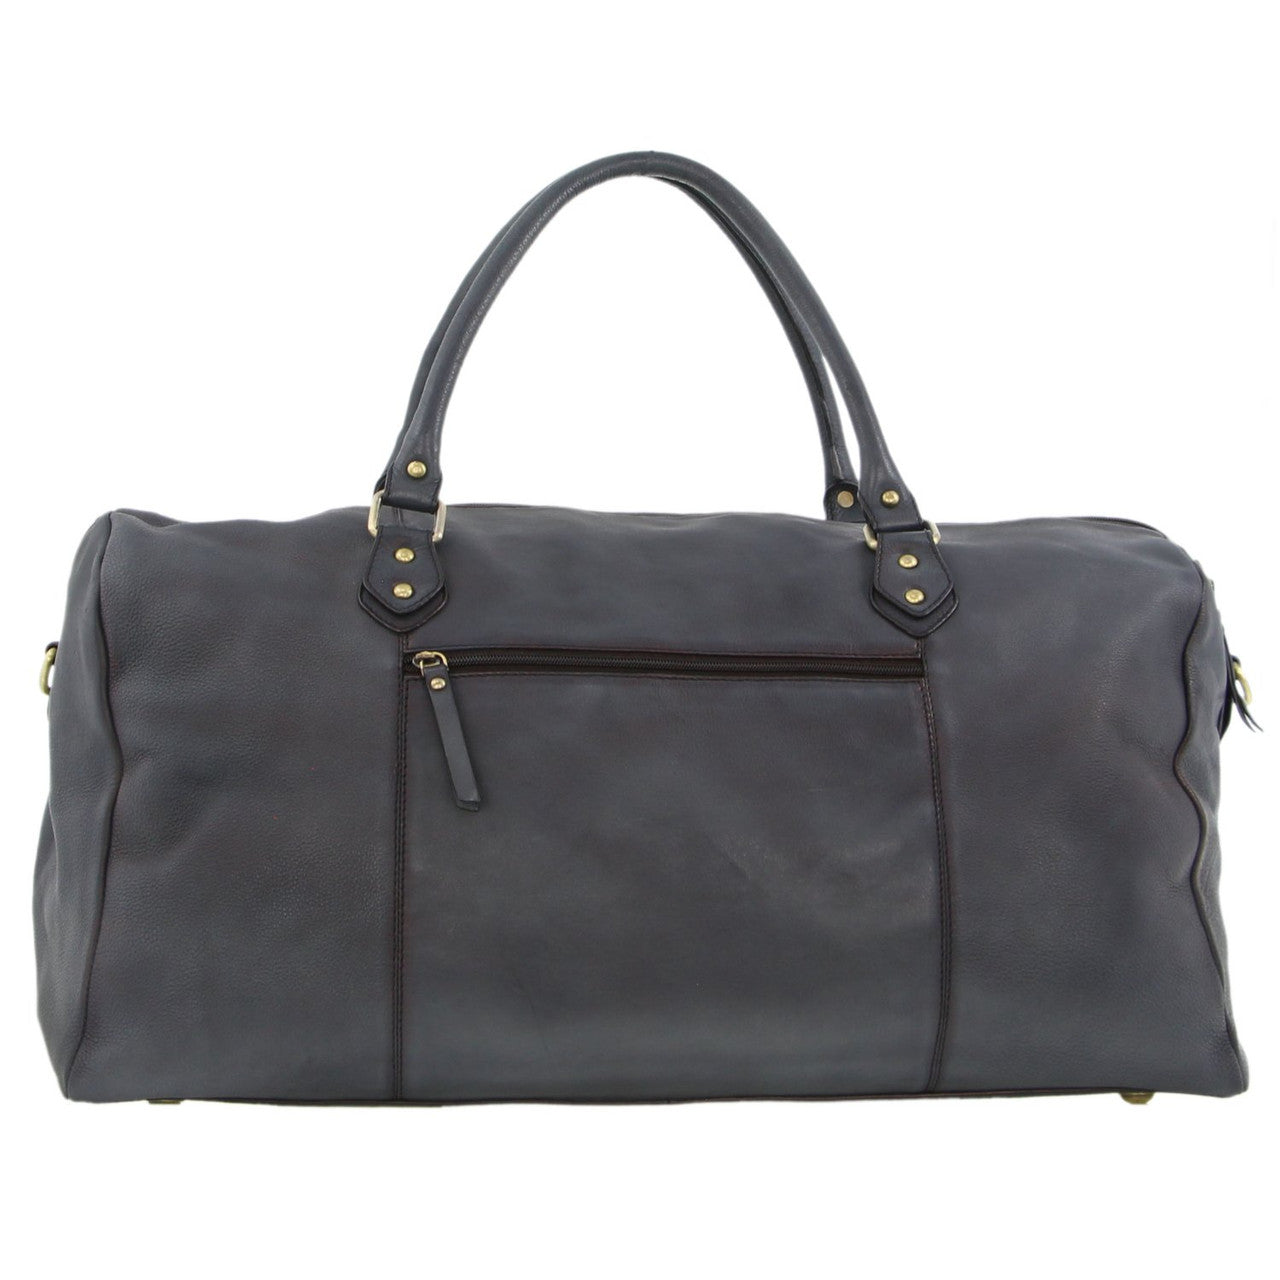 Pierre Cardin - 56cm Leather overnight bag PC3335 - Black-3